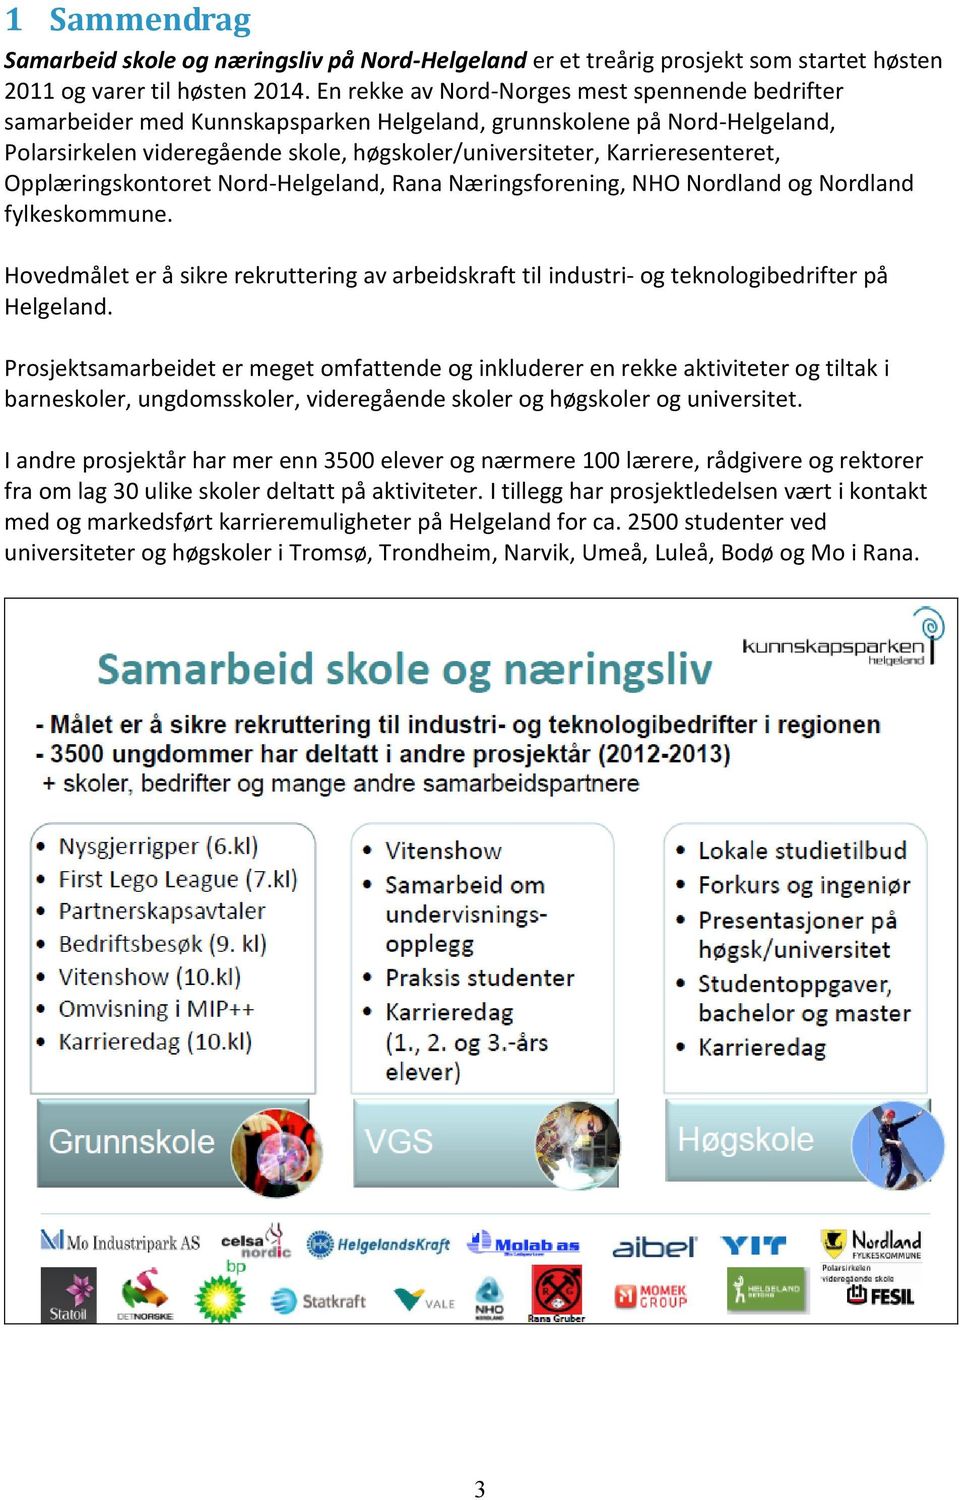 Karrieresenteret, Opplæringskontoret Nord-Helgeland, Rana Næringsforening, NHO Nordland og Nordland fylkeskommune.